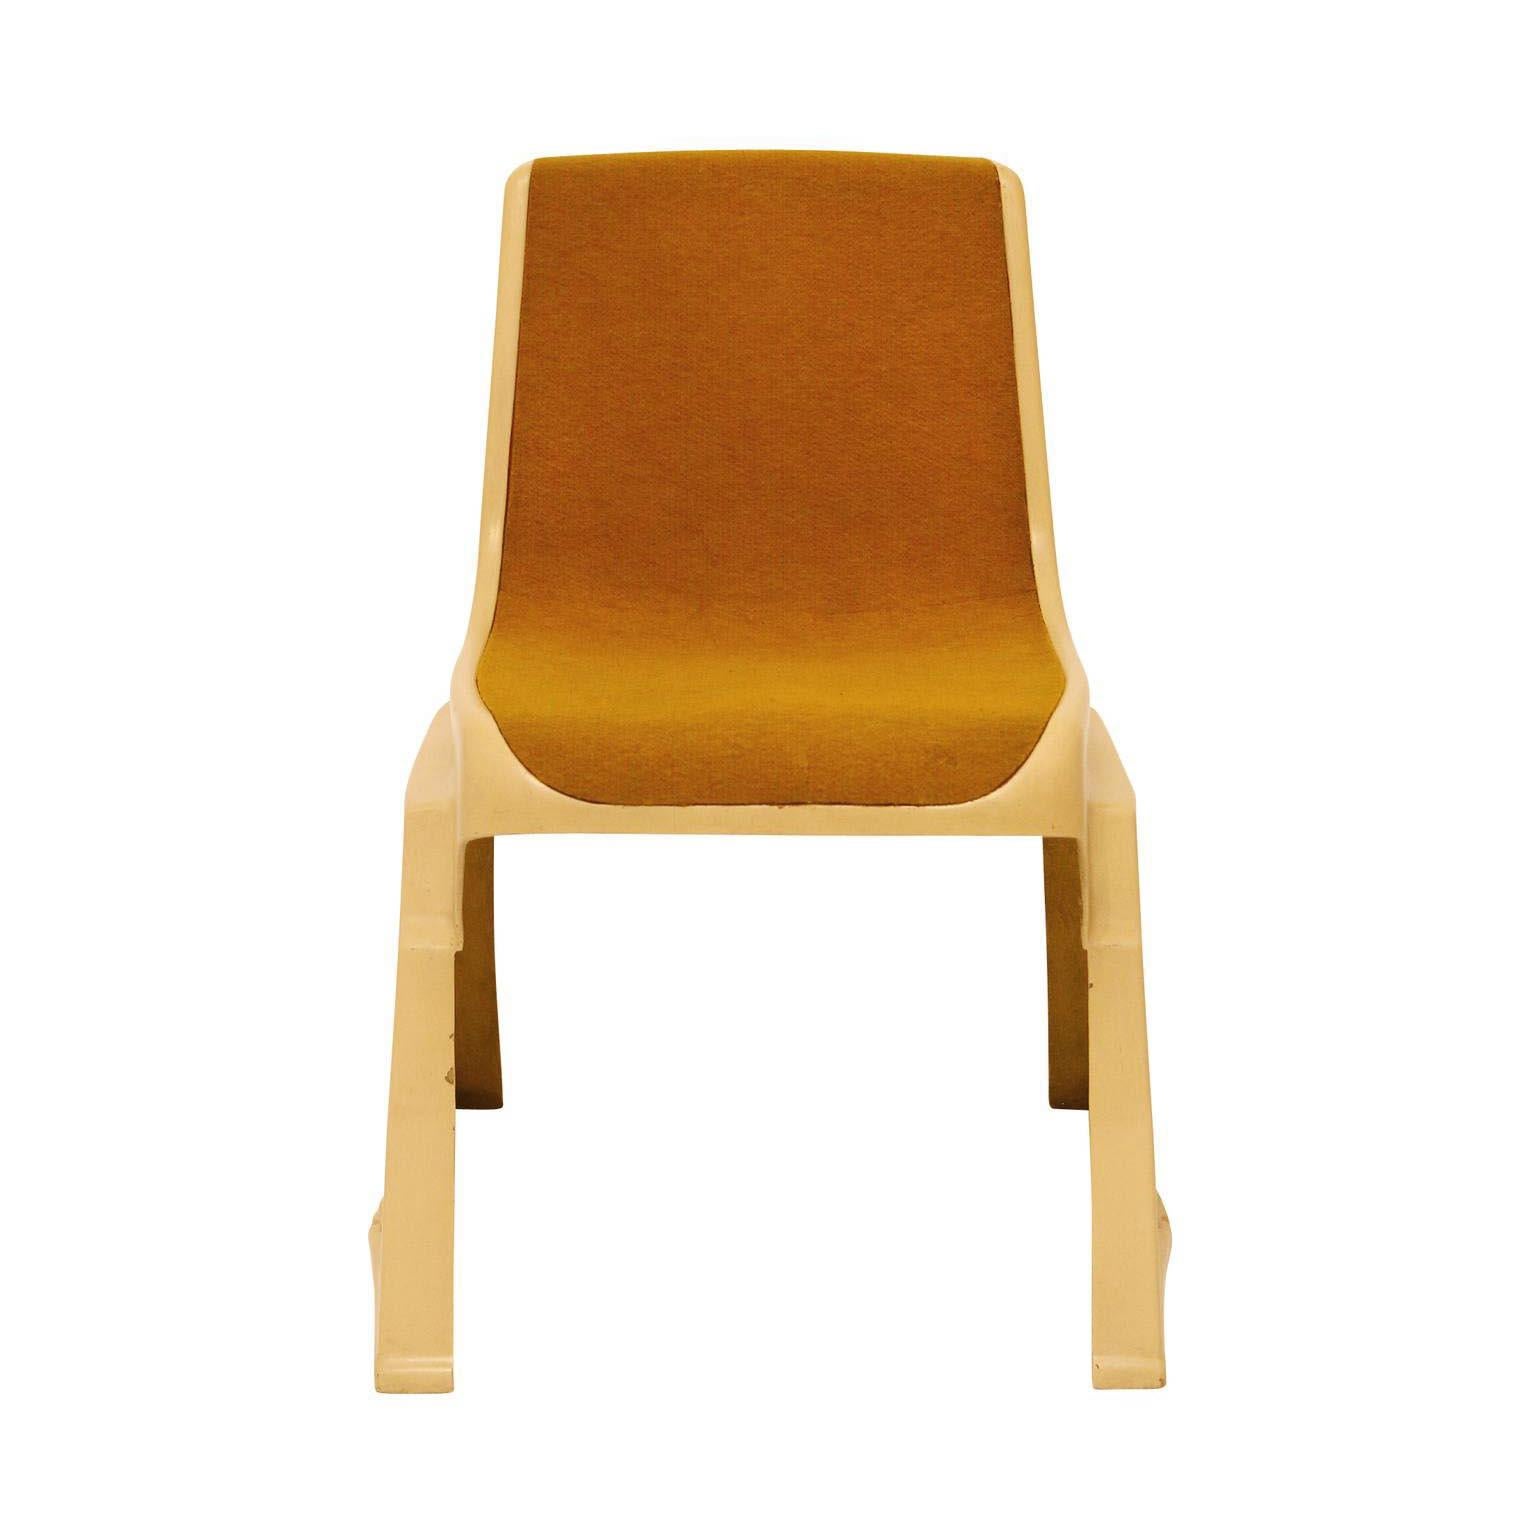 Un ensemble de huit très rares chaises empilables brutalistes de l'architecte autrichien Gunther Domenig. Il n'y a eu qu'environ 300 chaises produites au total.
Ils sont fabriqués en plastique/fibre de verre et les sièges sont recouverts d'une sorte